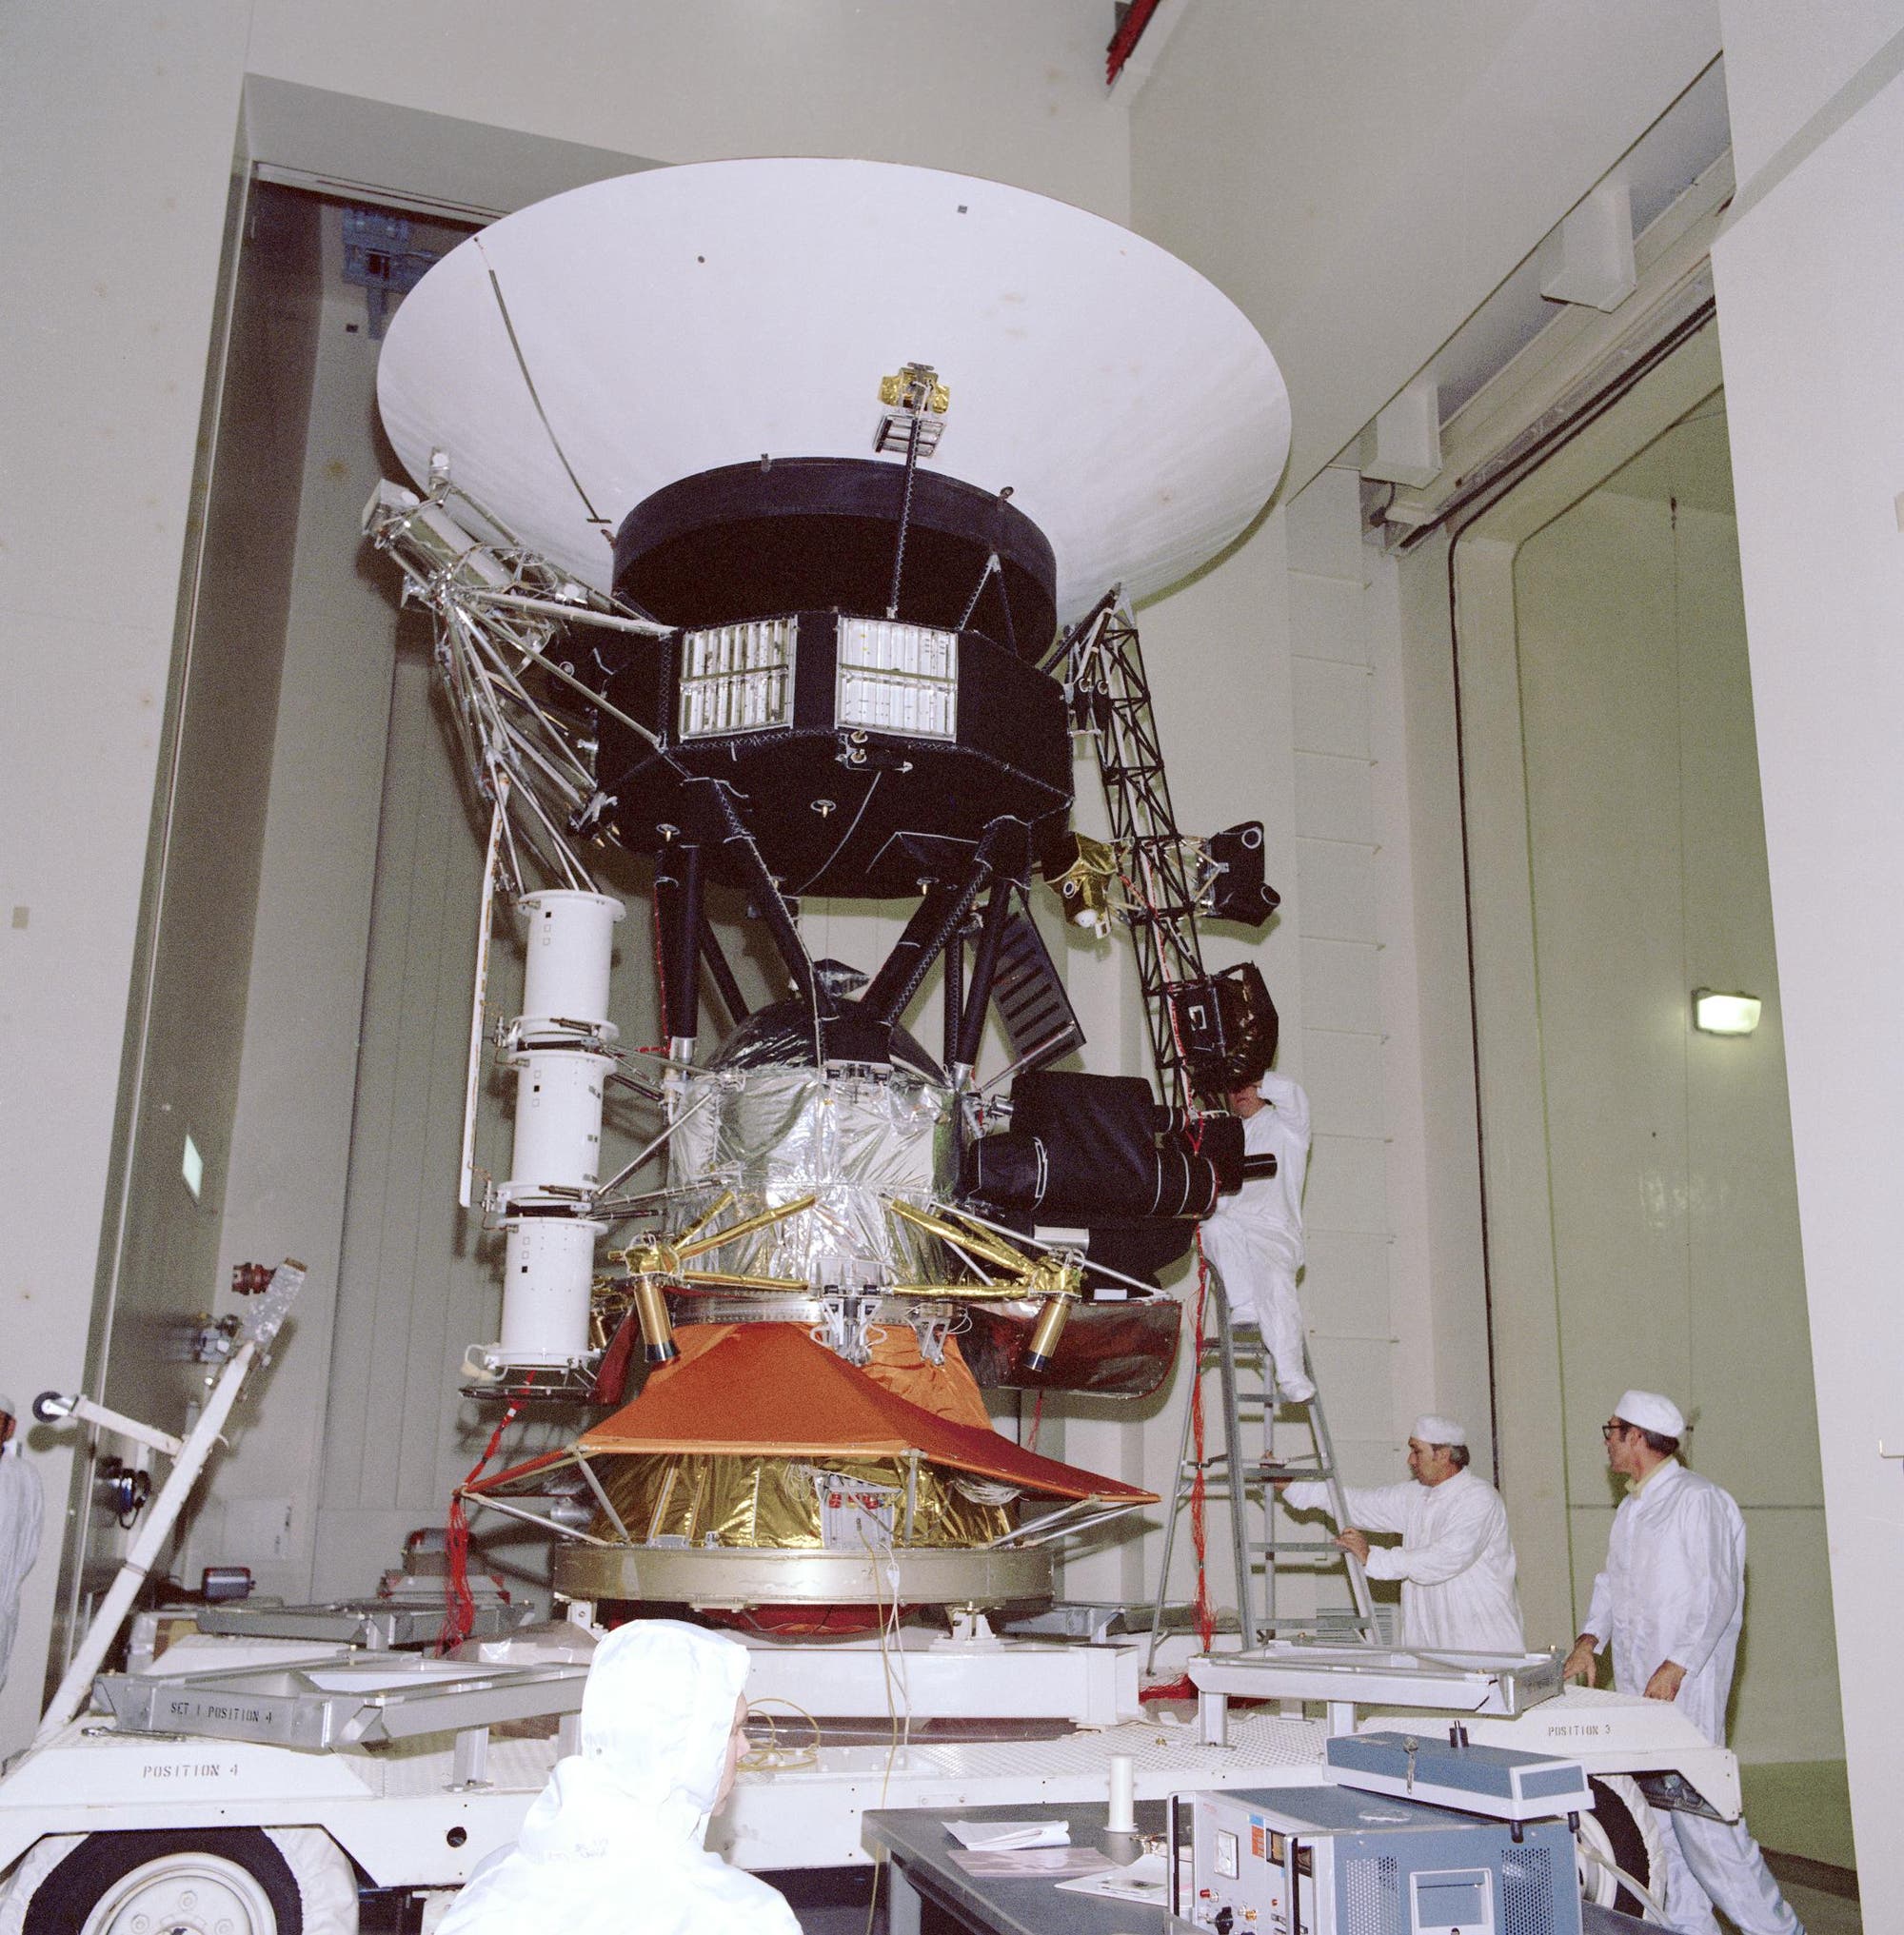 Wie Ingenieure am 18. November 1976 an der Voyager-Sonde der NASA arbeiten, zeigt dieses Archivfoto.